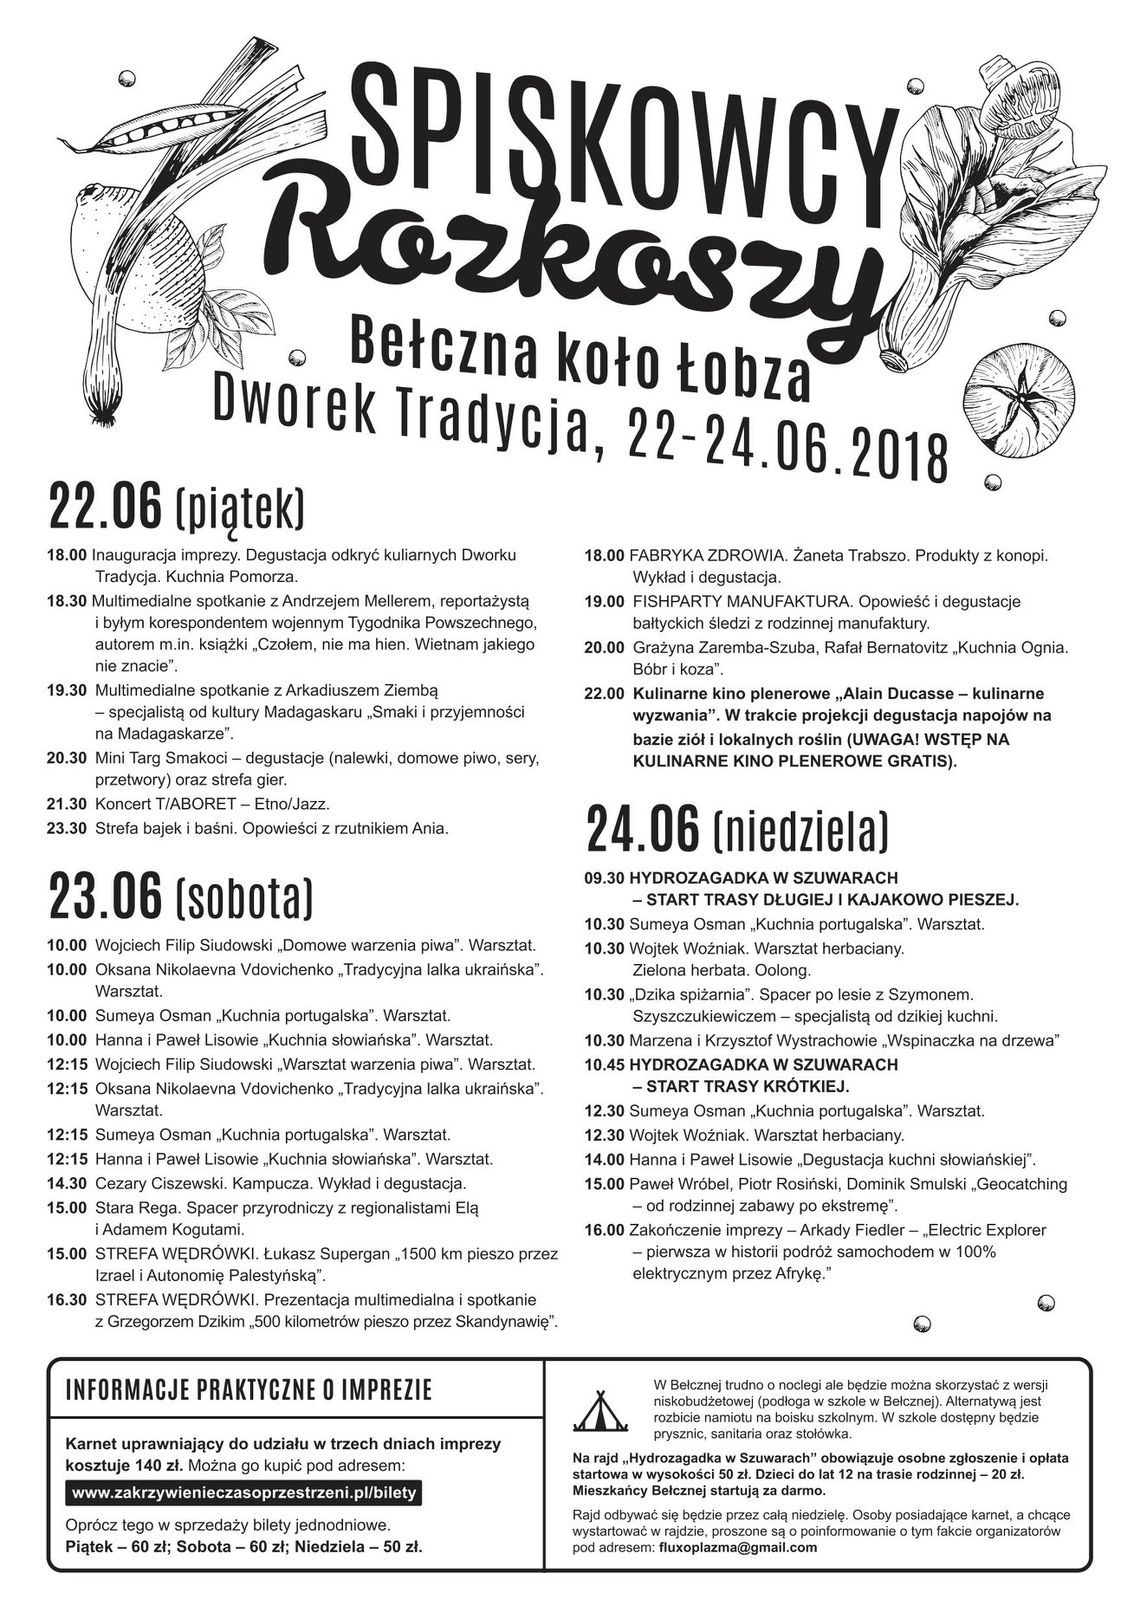 Festiwal Spiskowców Rozkoszy 2018